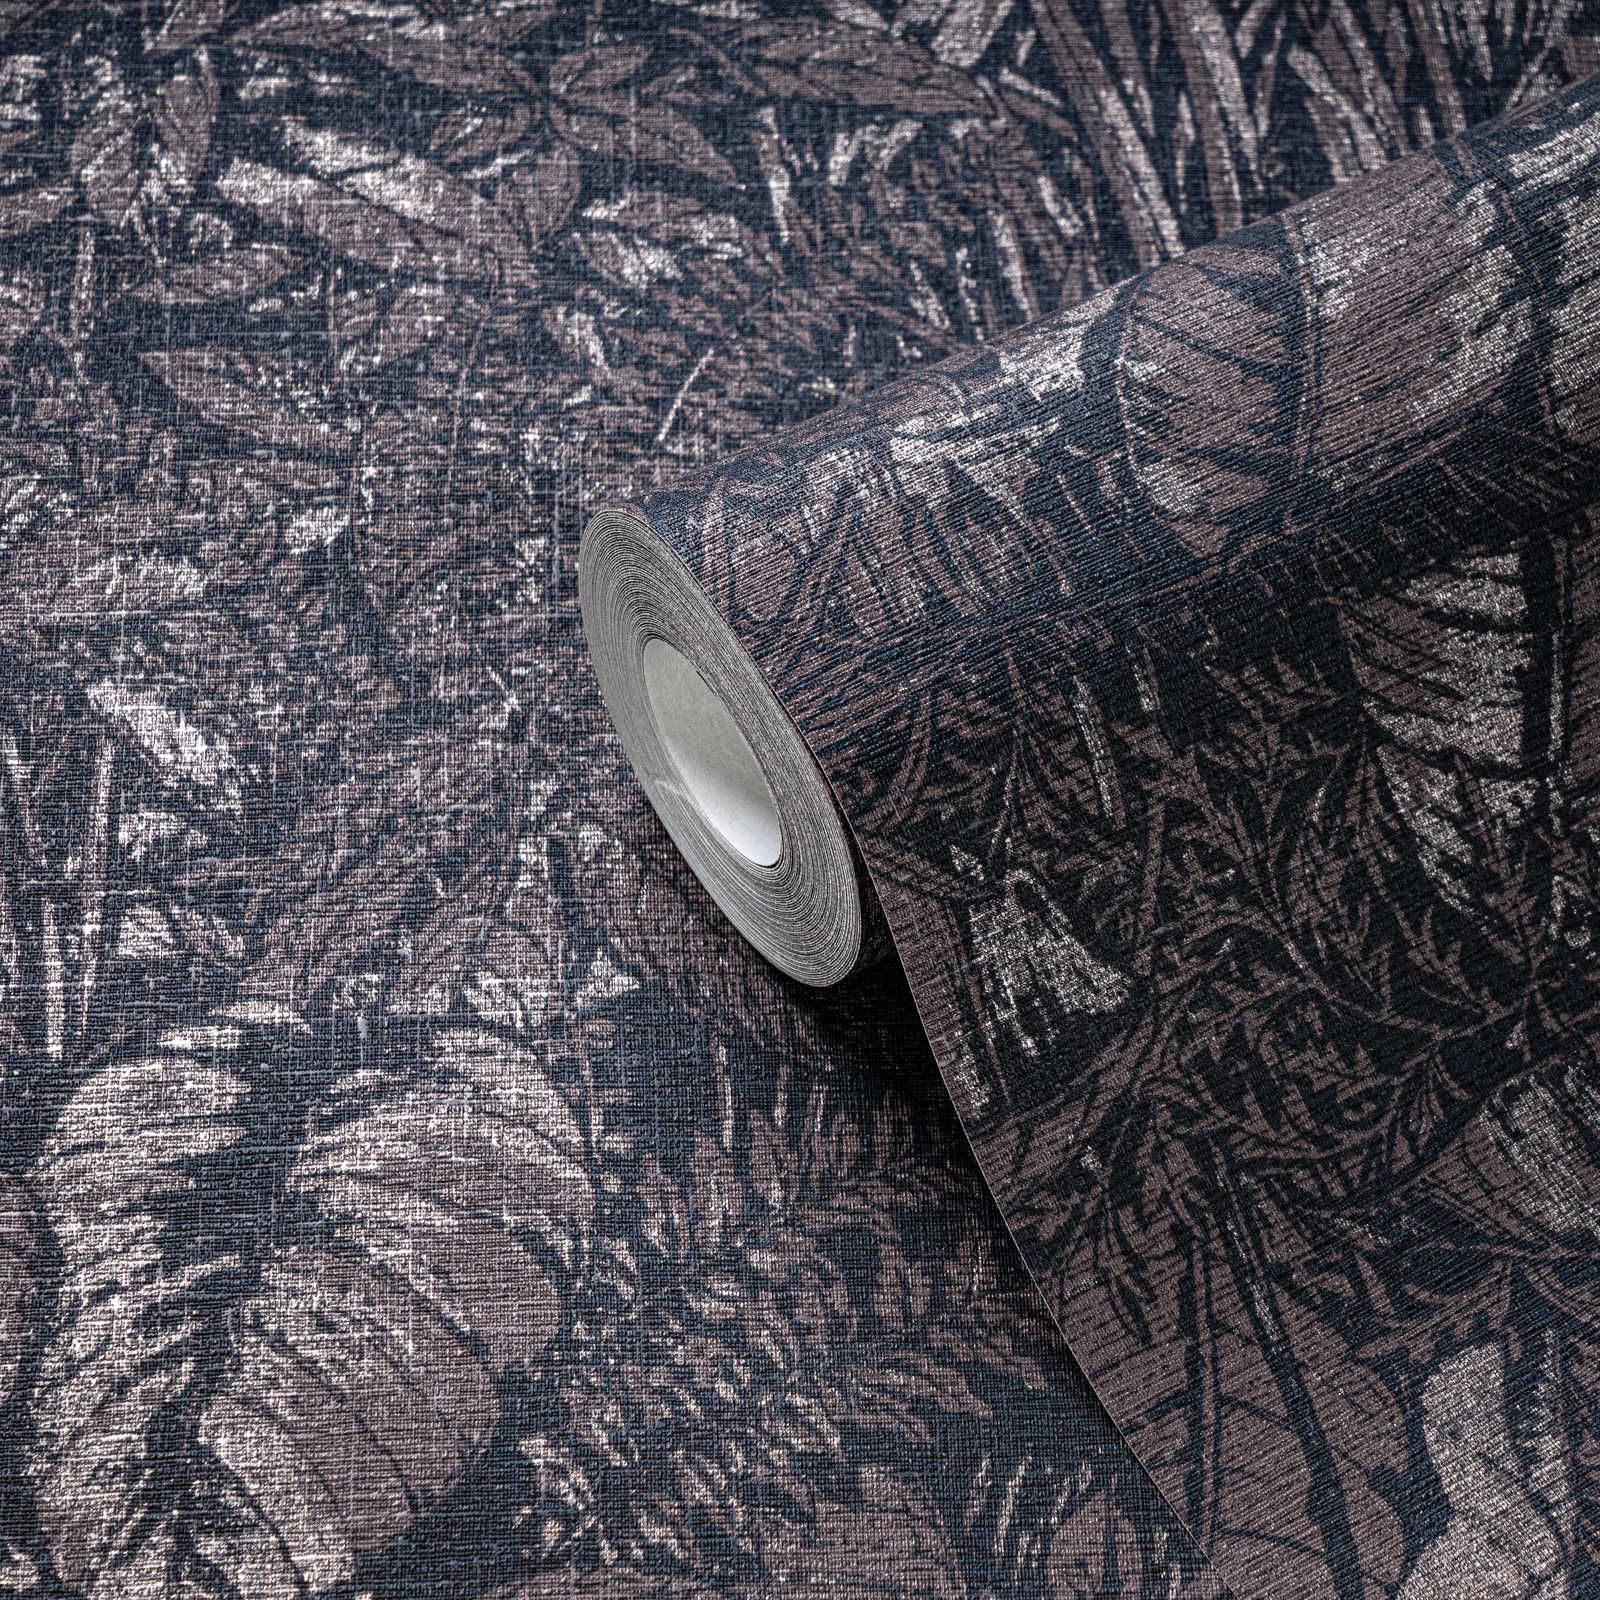             Dschungel Tapete leicht glänzend mit Blatt Muster – Braun, Schwarz, Silber
        